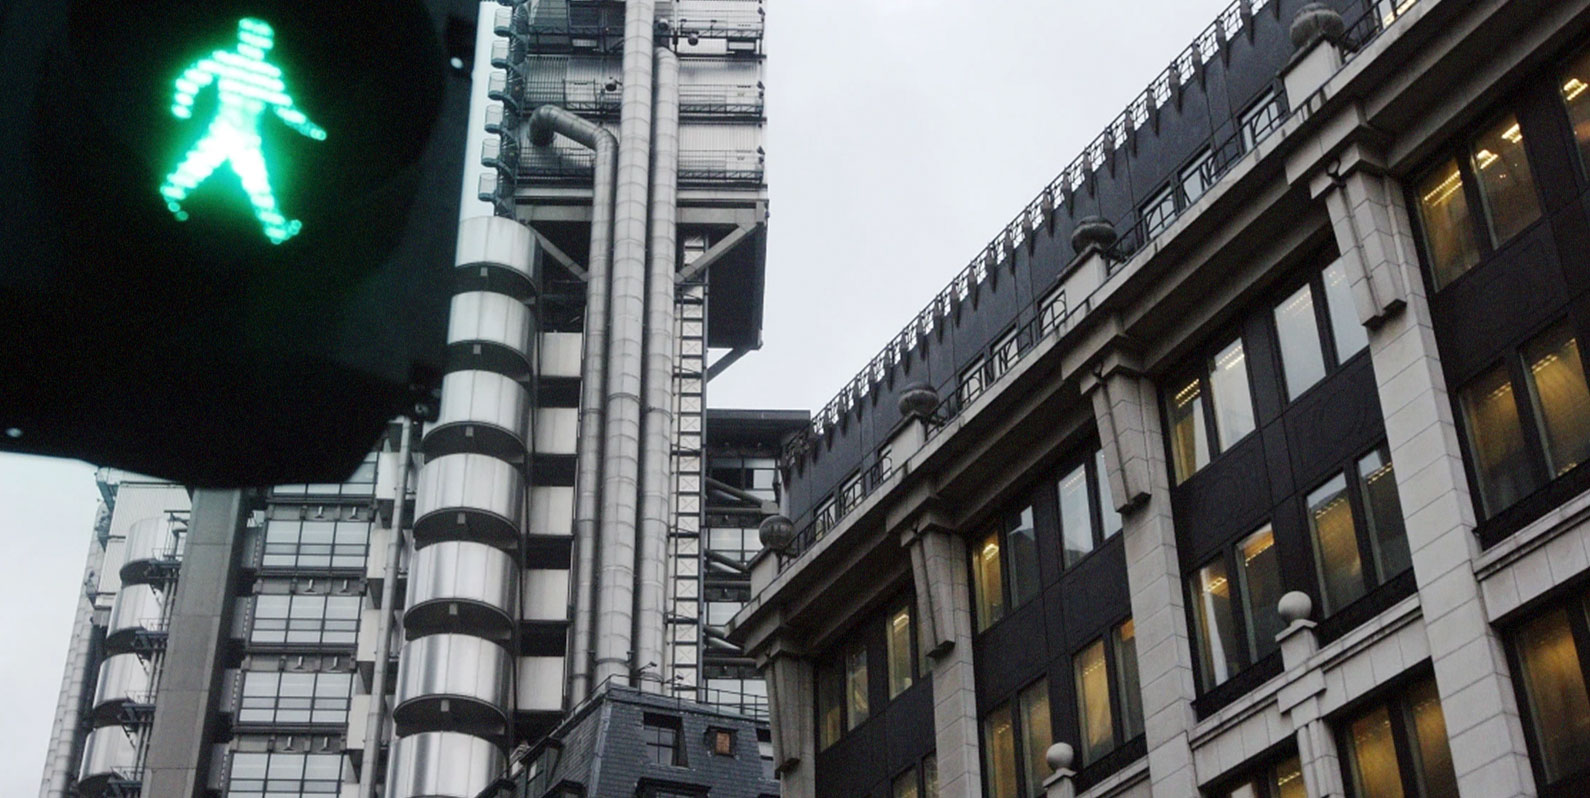 Londres está a testar semáforos que priorizam pedestres